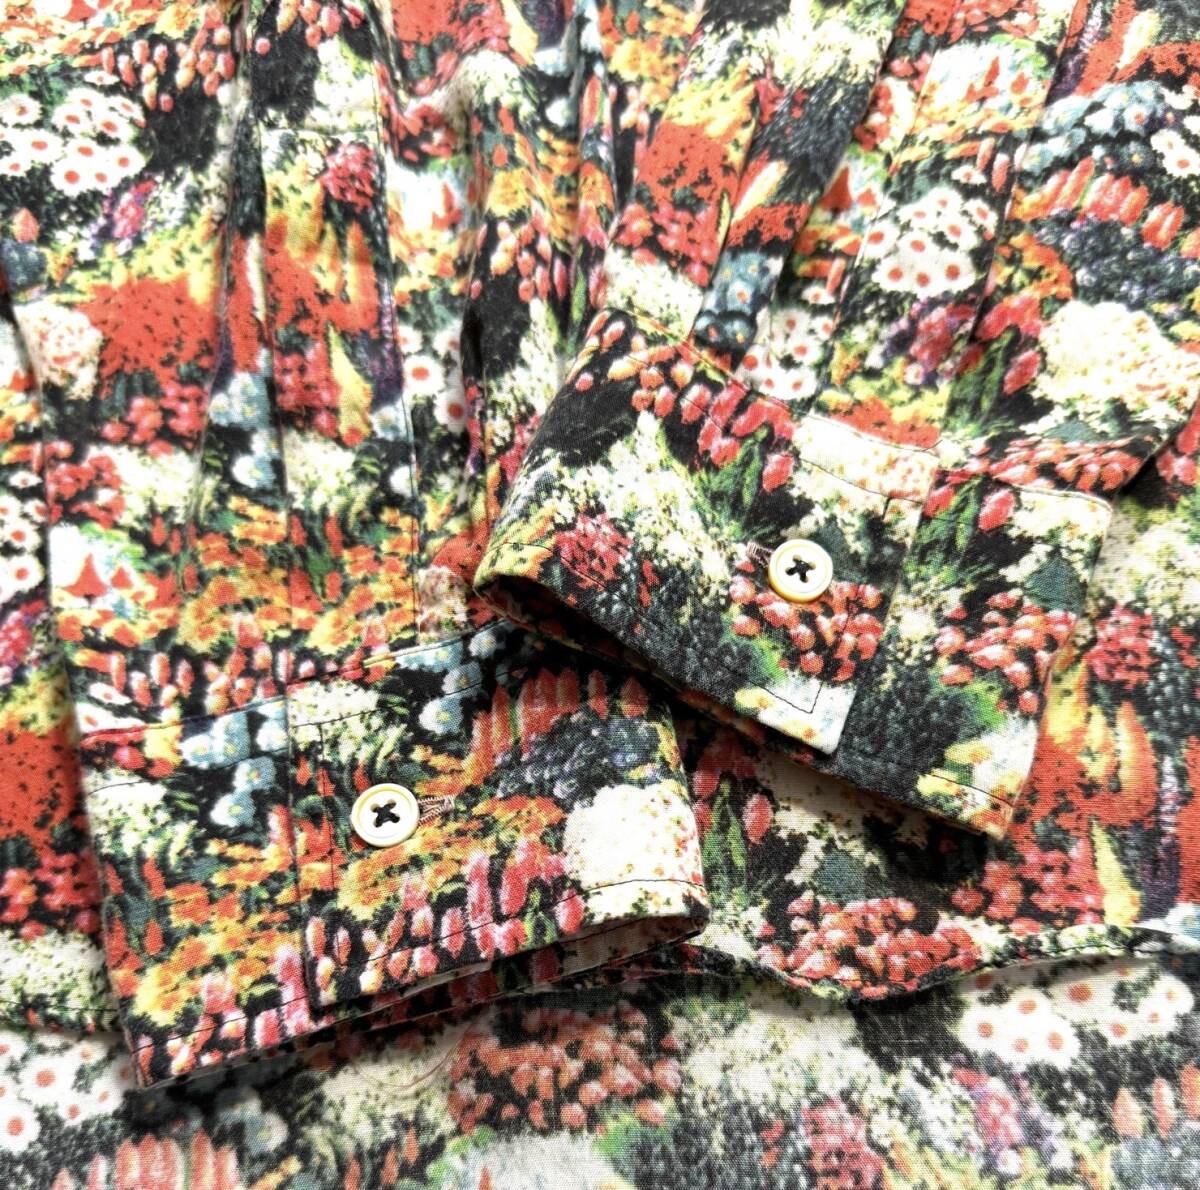  красивая вещь 【XL】Paul Smith  Paul Smith   цветы   рукоятка   длинный рукав   рубашка   XL  мужской   рекомендуемая розничная цена 2.410000【Seed PackePRINT SHIRT】... дизайн   стоимость доставки 370  йен   сделано в Японии 